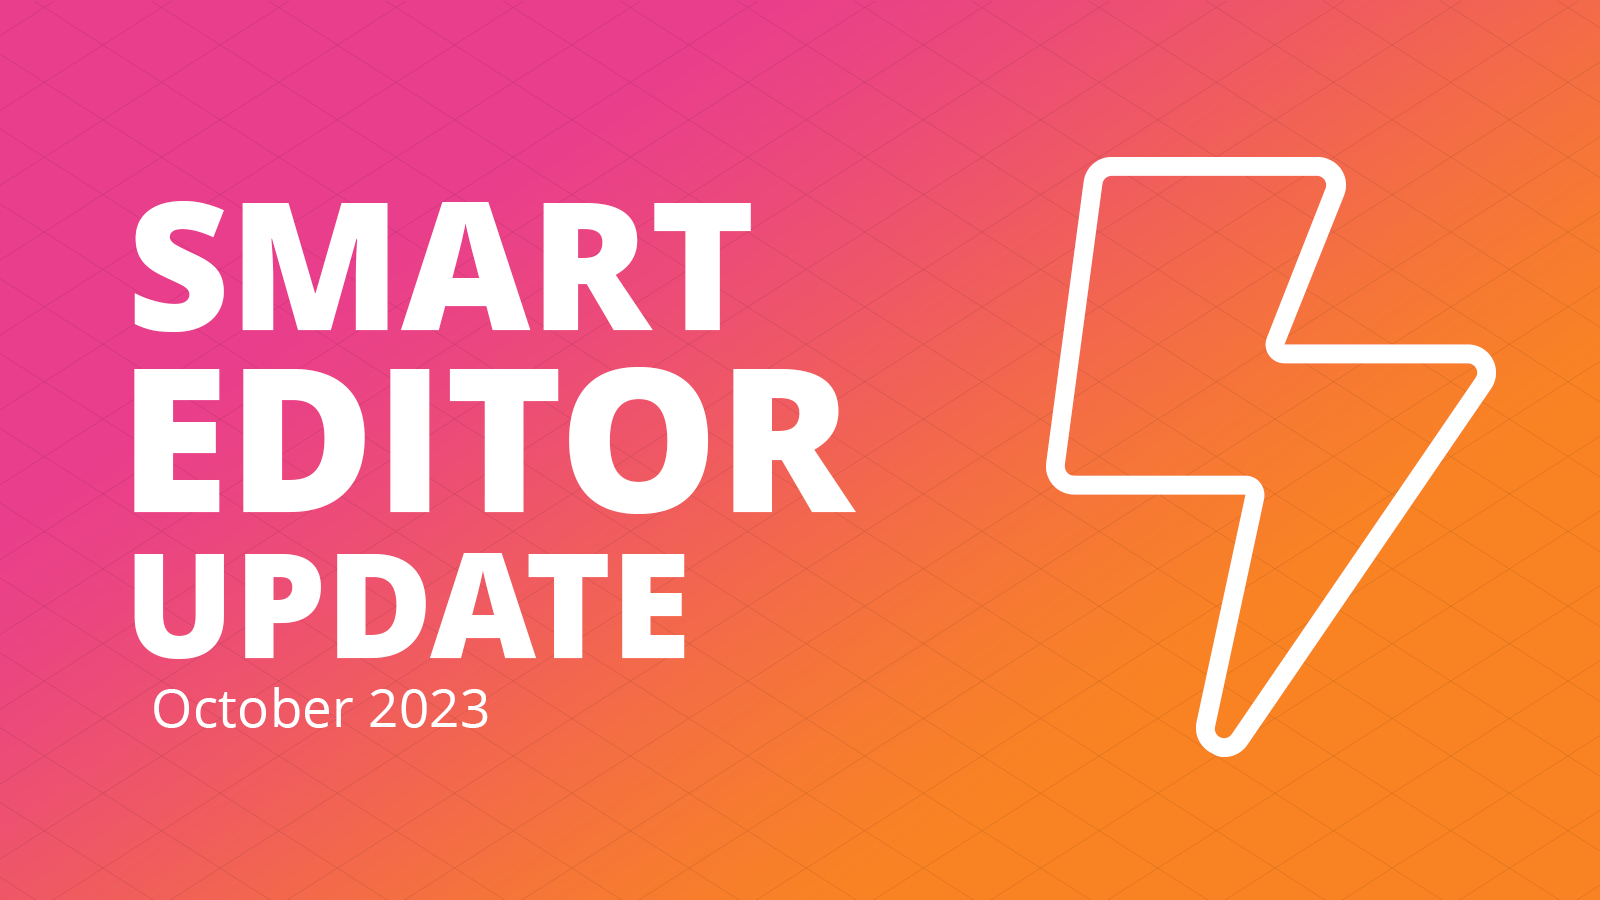 Smart Editor update: October 2023